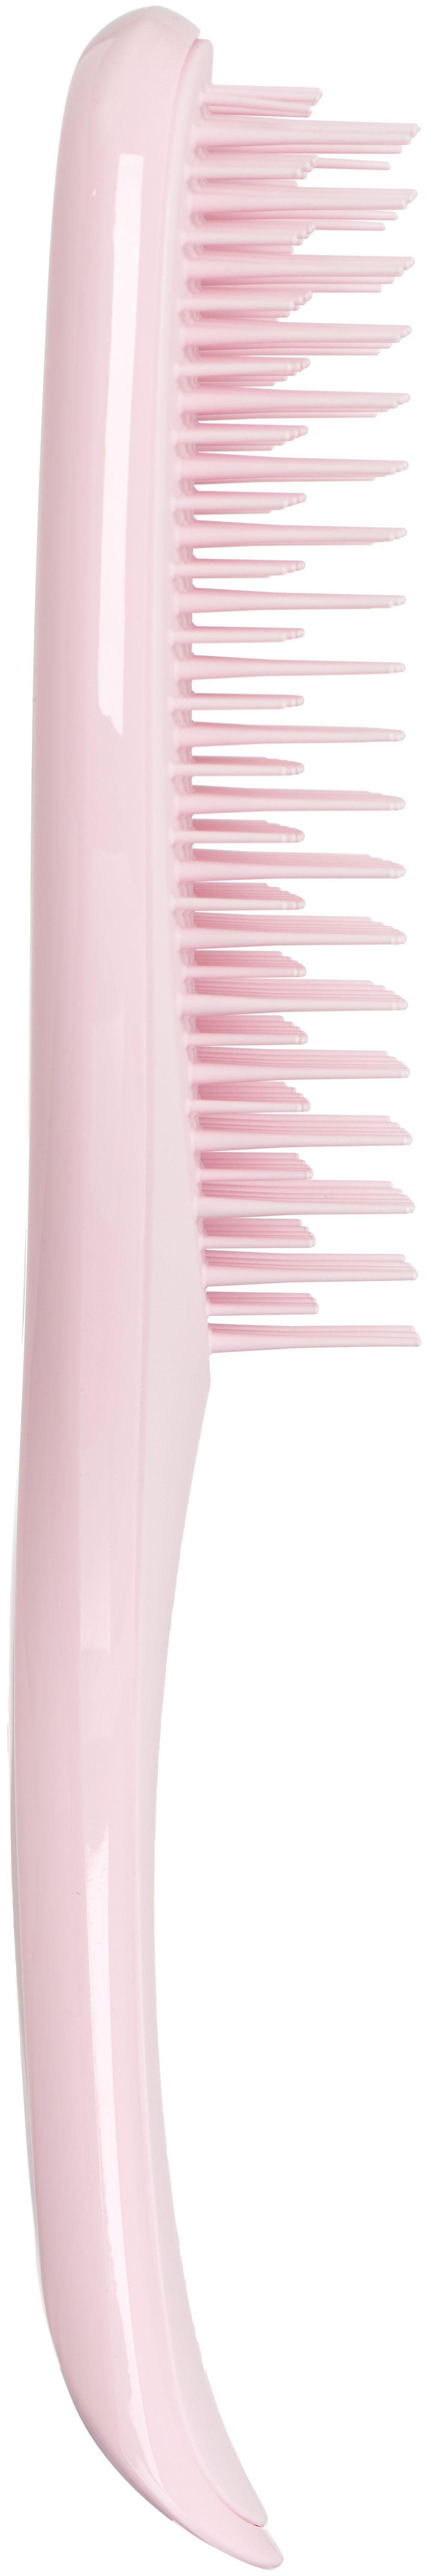 TANGLE TEEZER Haarentwirrbürste Haarbürste, Millennial zum nasser Haare, Detangler, Wet Bürste Pink Entknoten